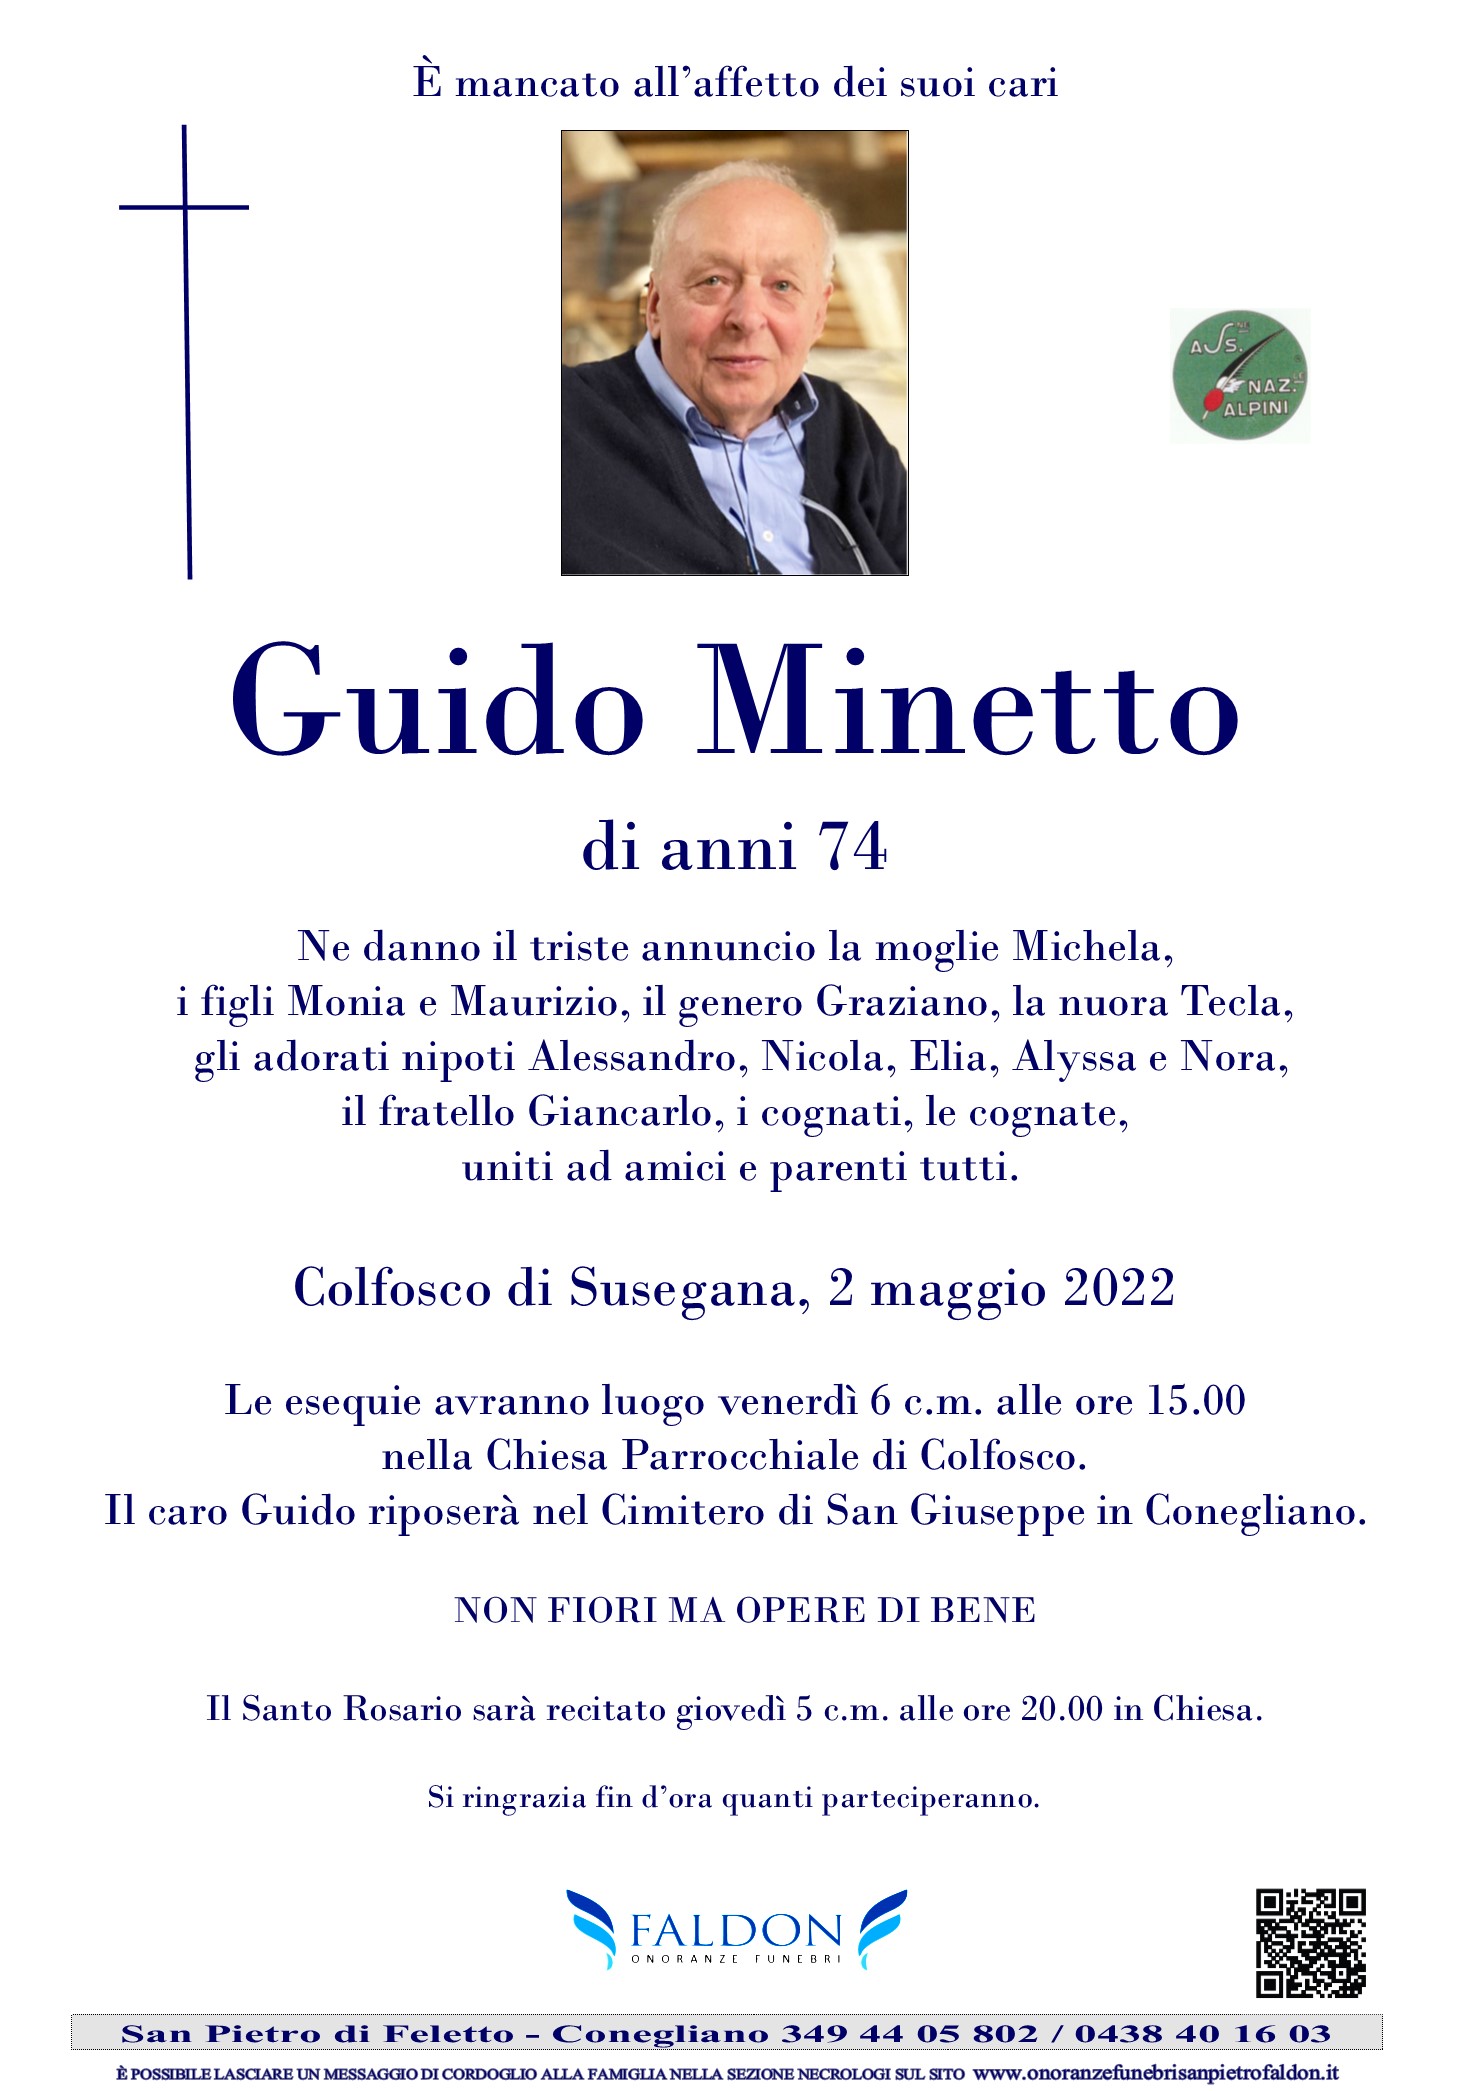 Guido Minetto